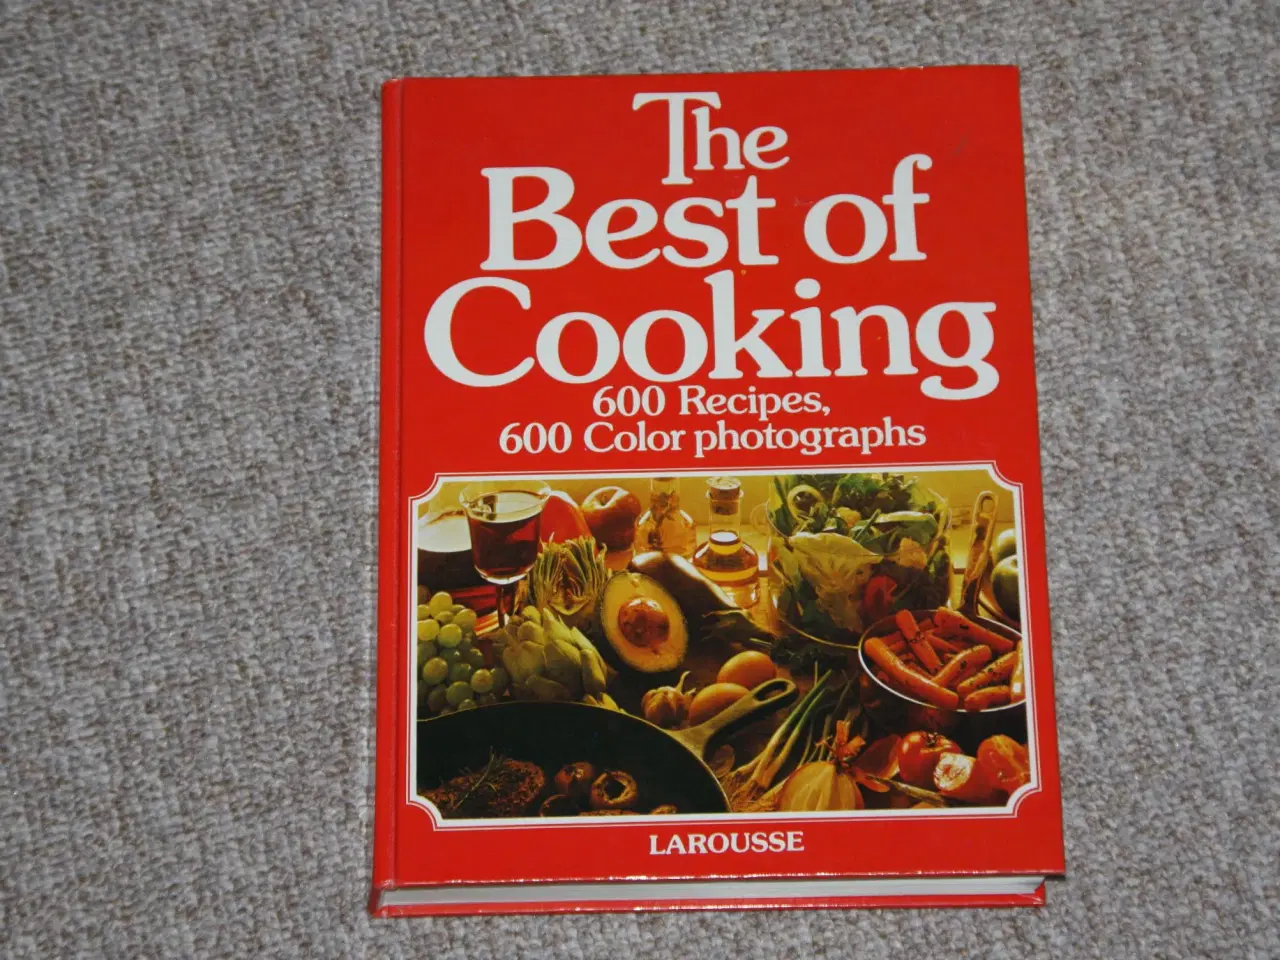 Billede 1 - Kogebogen The Best of Cooking sælges